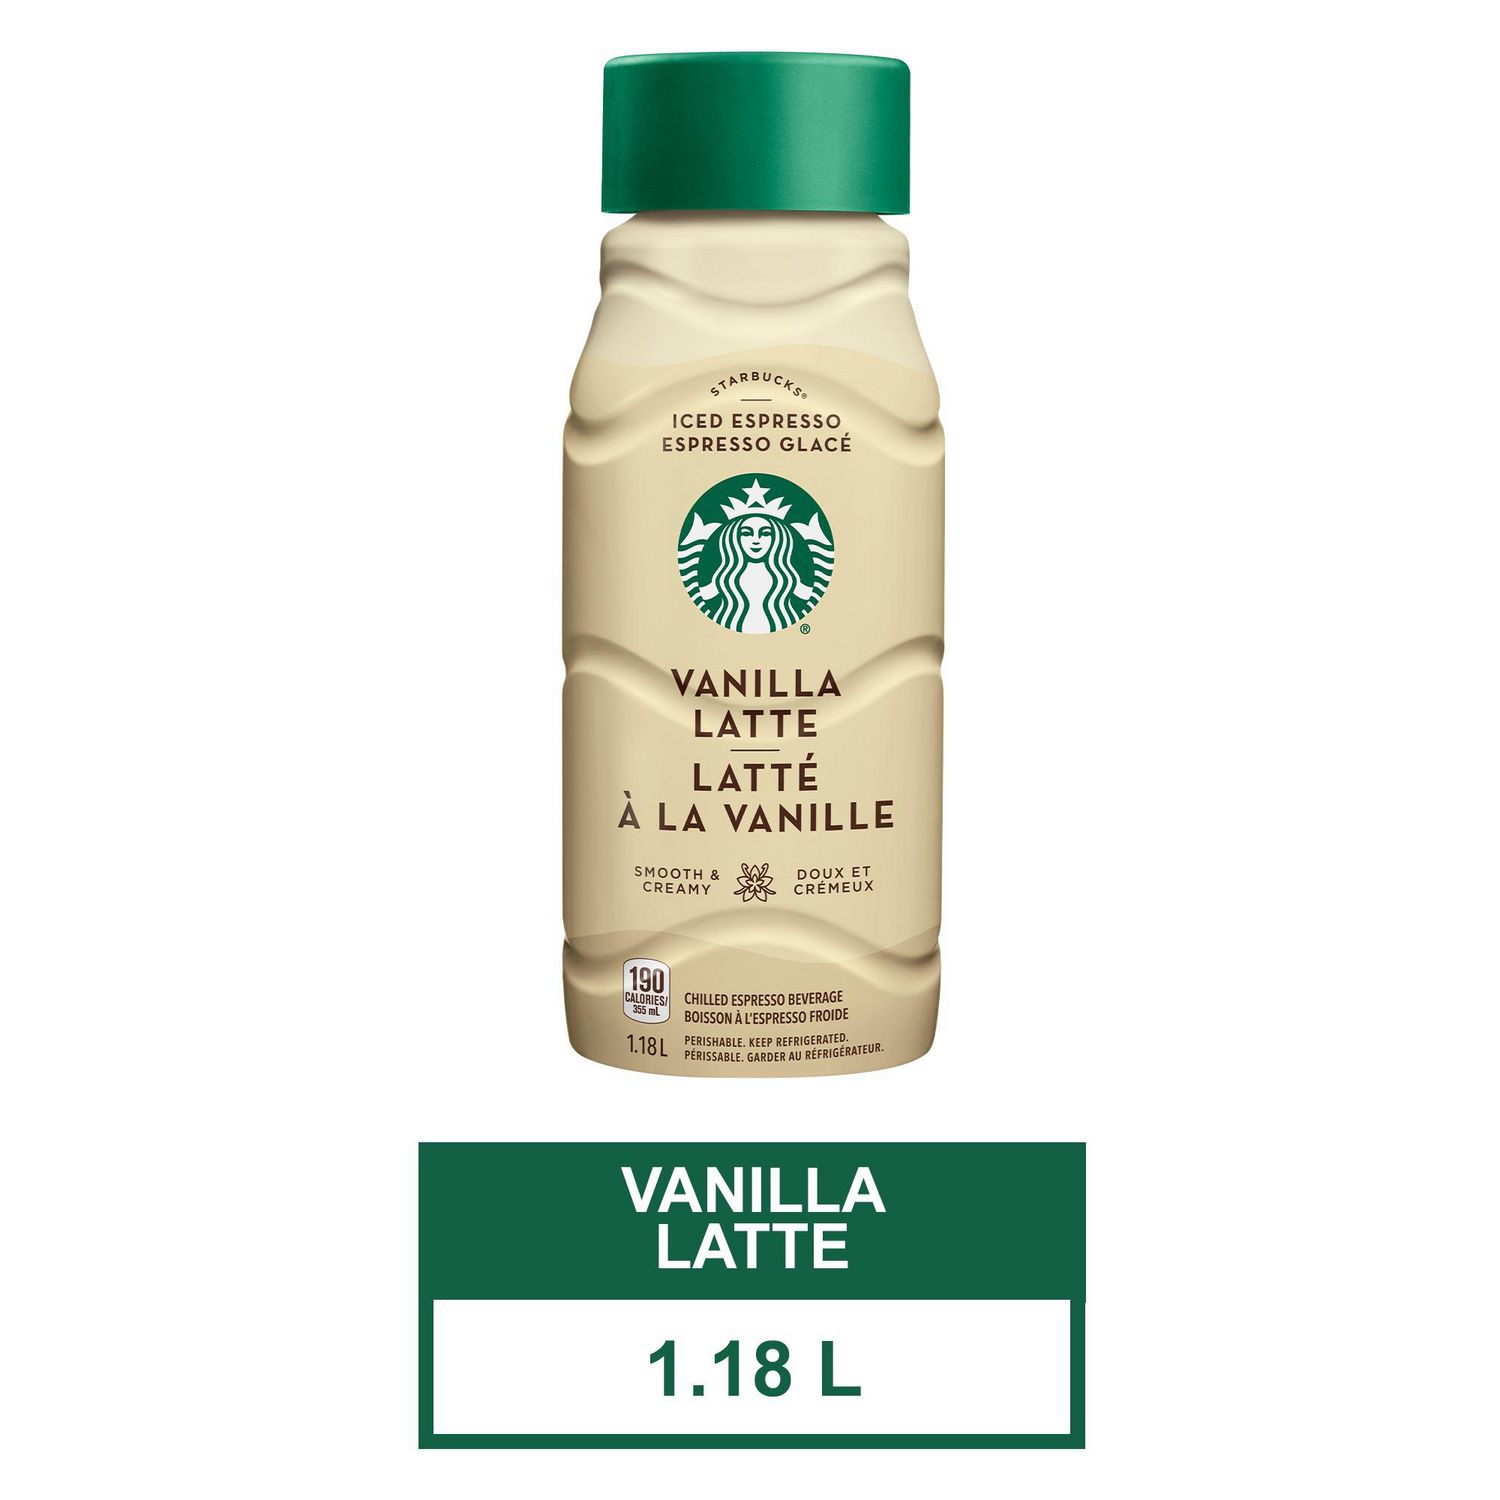 iced vanilla latte starbucks price